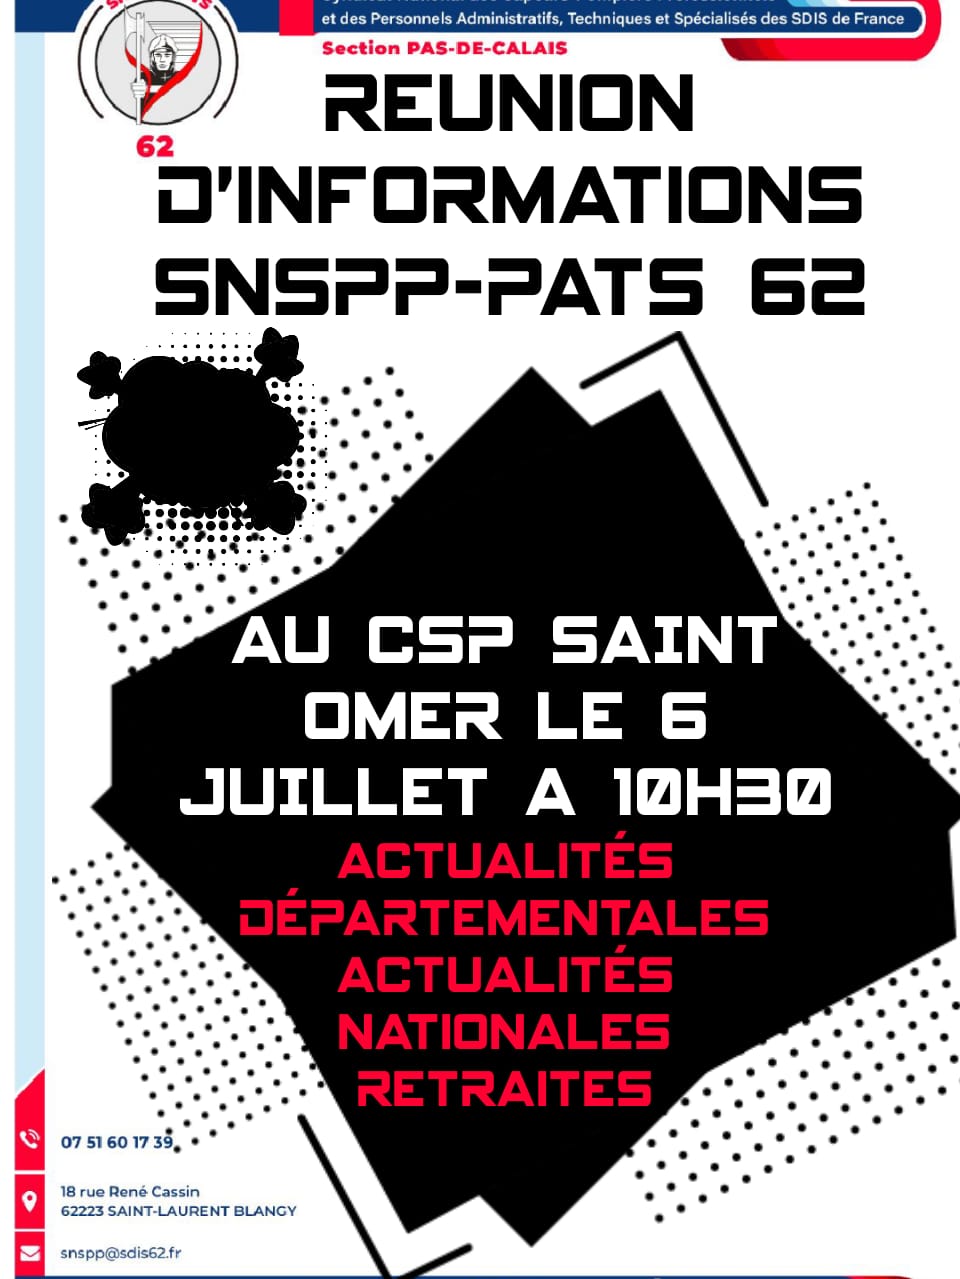 Réunion d’information SNSPP PATS62